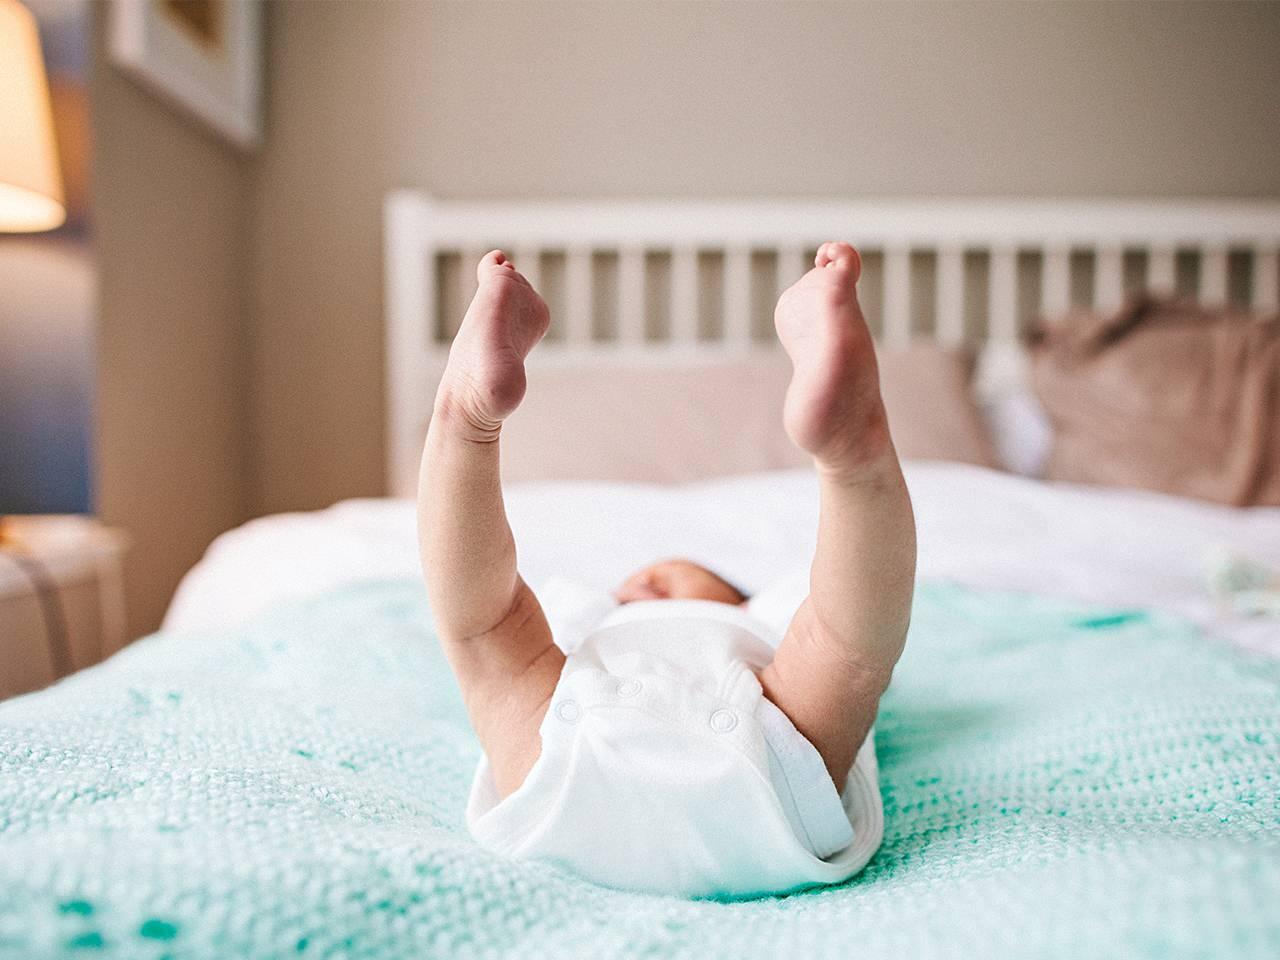 bebeklerde erken dönemde keşfedilmesi gereken önemli hastalıklardan biridir kalça çıkığı